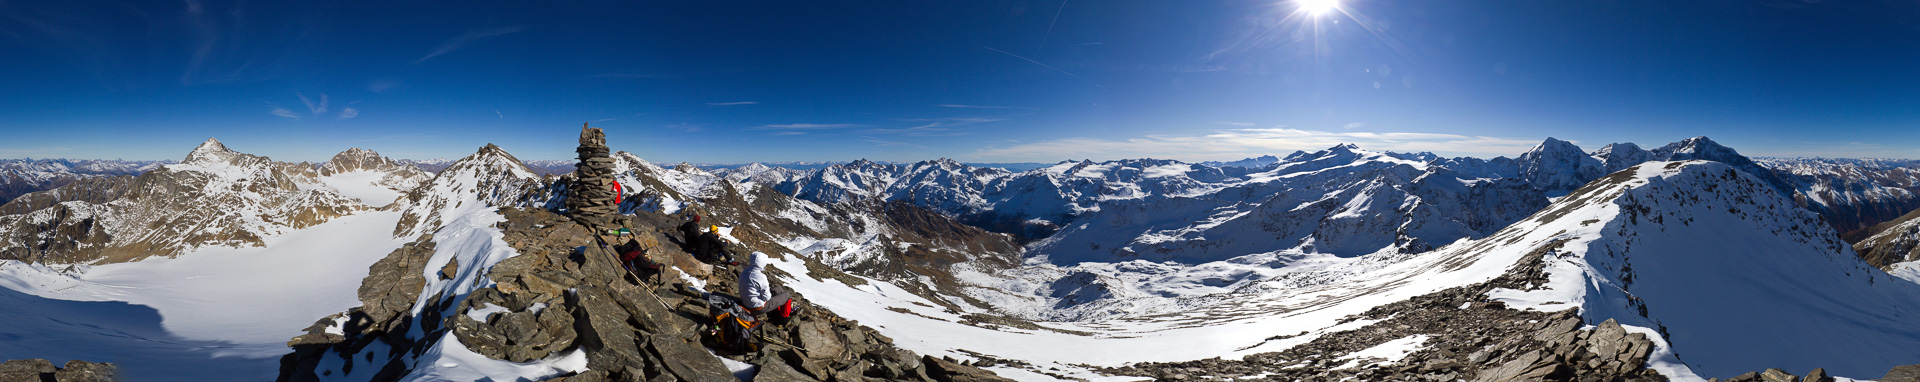 Auch das Gipfelpanorama besicht mit Nah- und Fernblicken: Laaser Ferner, Dolomiten, Cevedale, Königspitze, ...